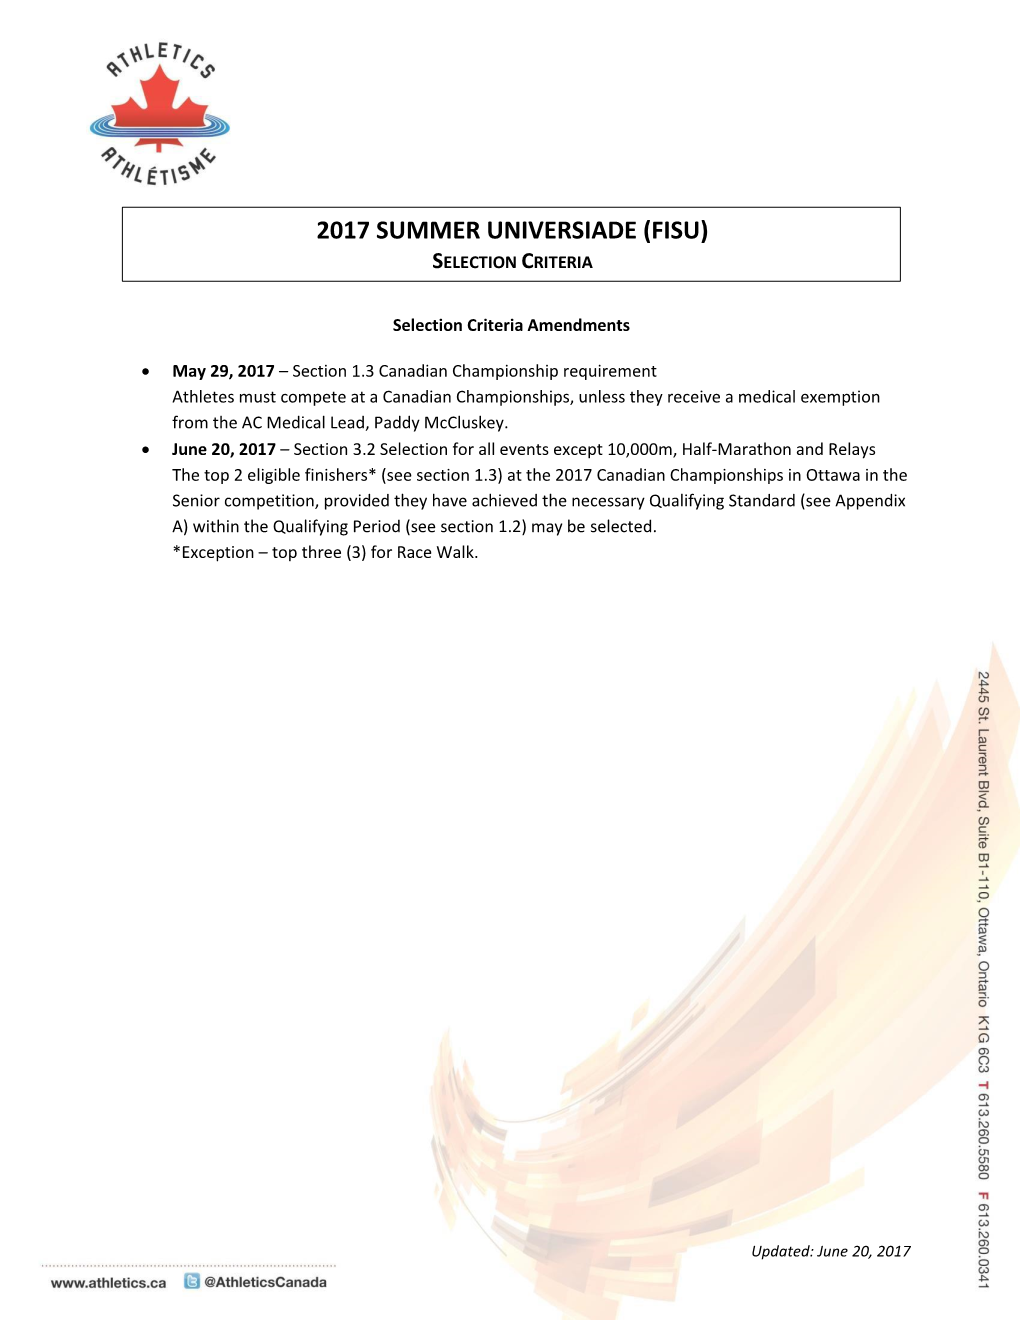 2017 Summer Universiade (Fisu)